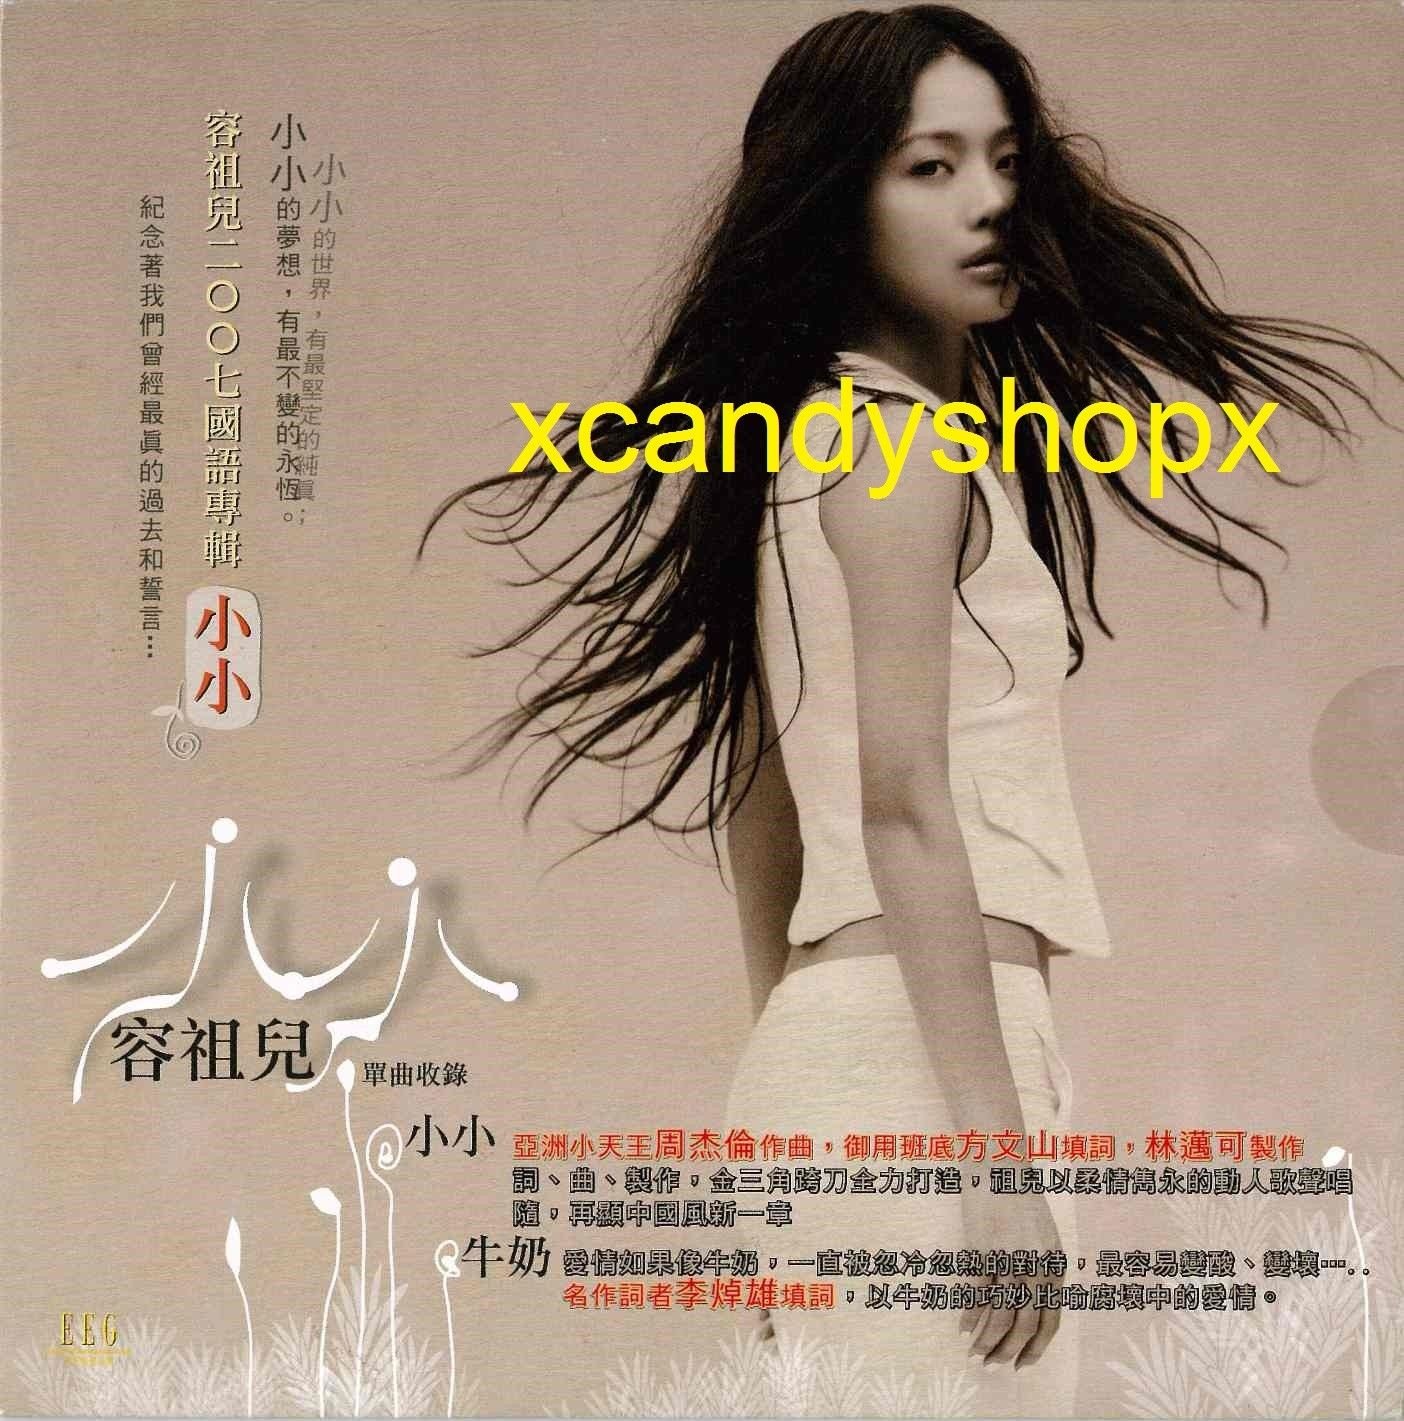 JOEY YUNG å®¹ç¥�å�� å°�å°� Taiwan official single (2007)